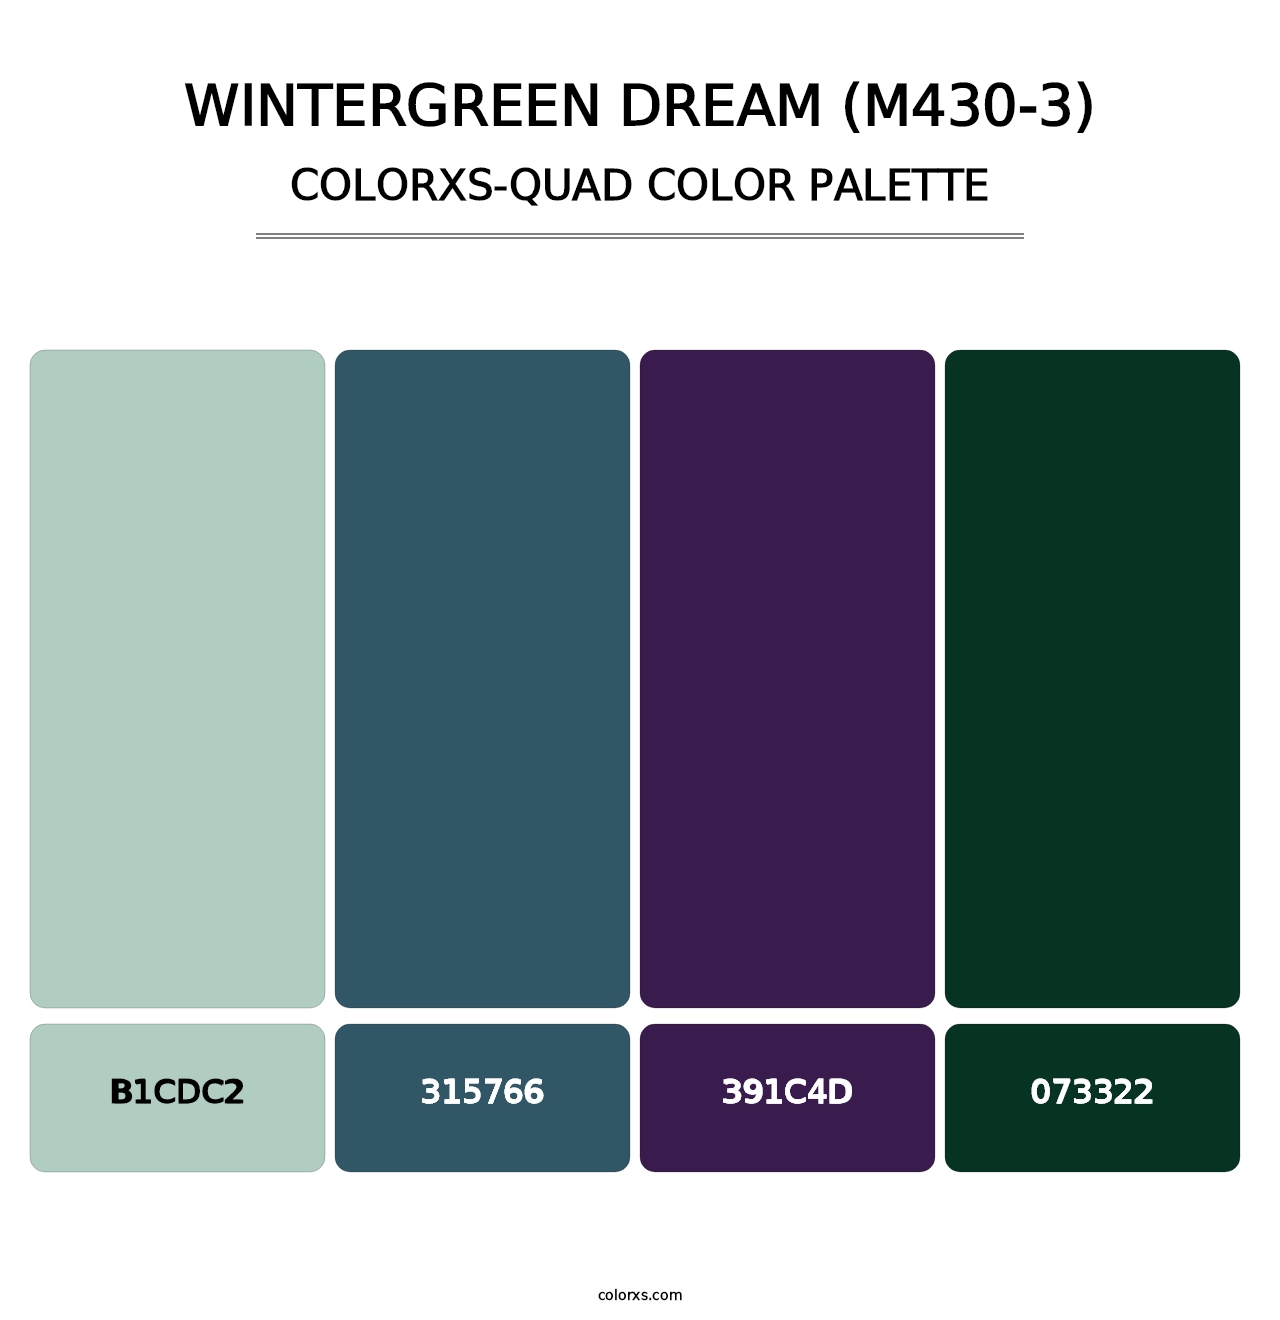 Wintergreen Dream (M430-3) - Colorxs Quad Palette